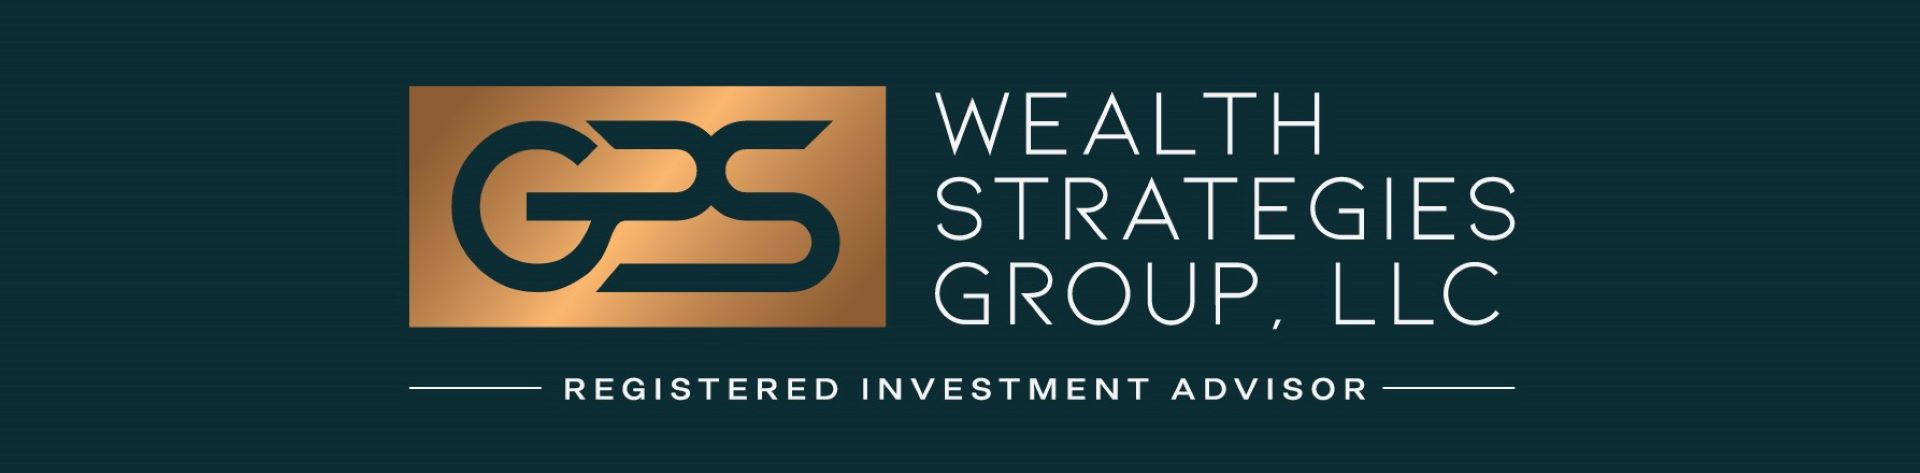 GPS Wealth Strategies Group, LLC